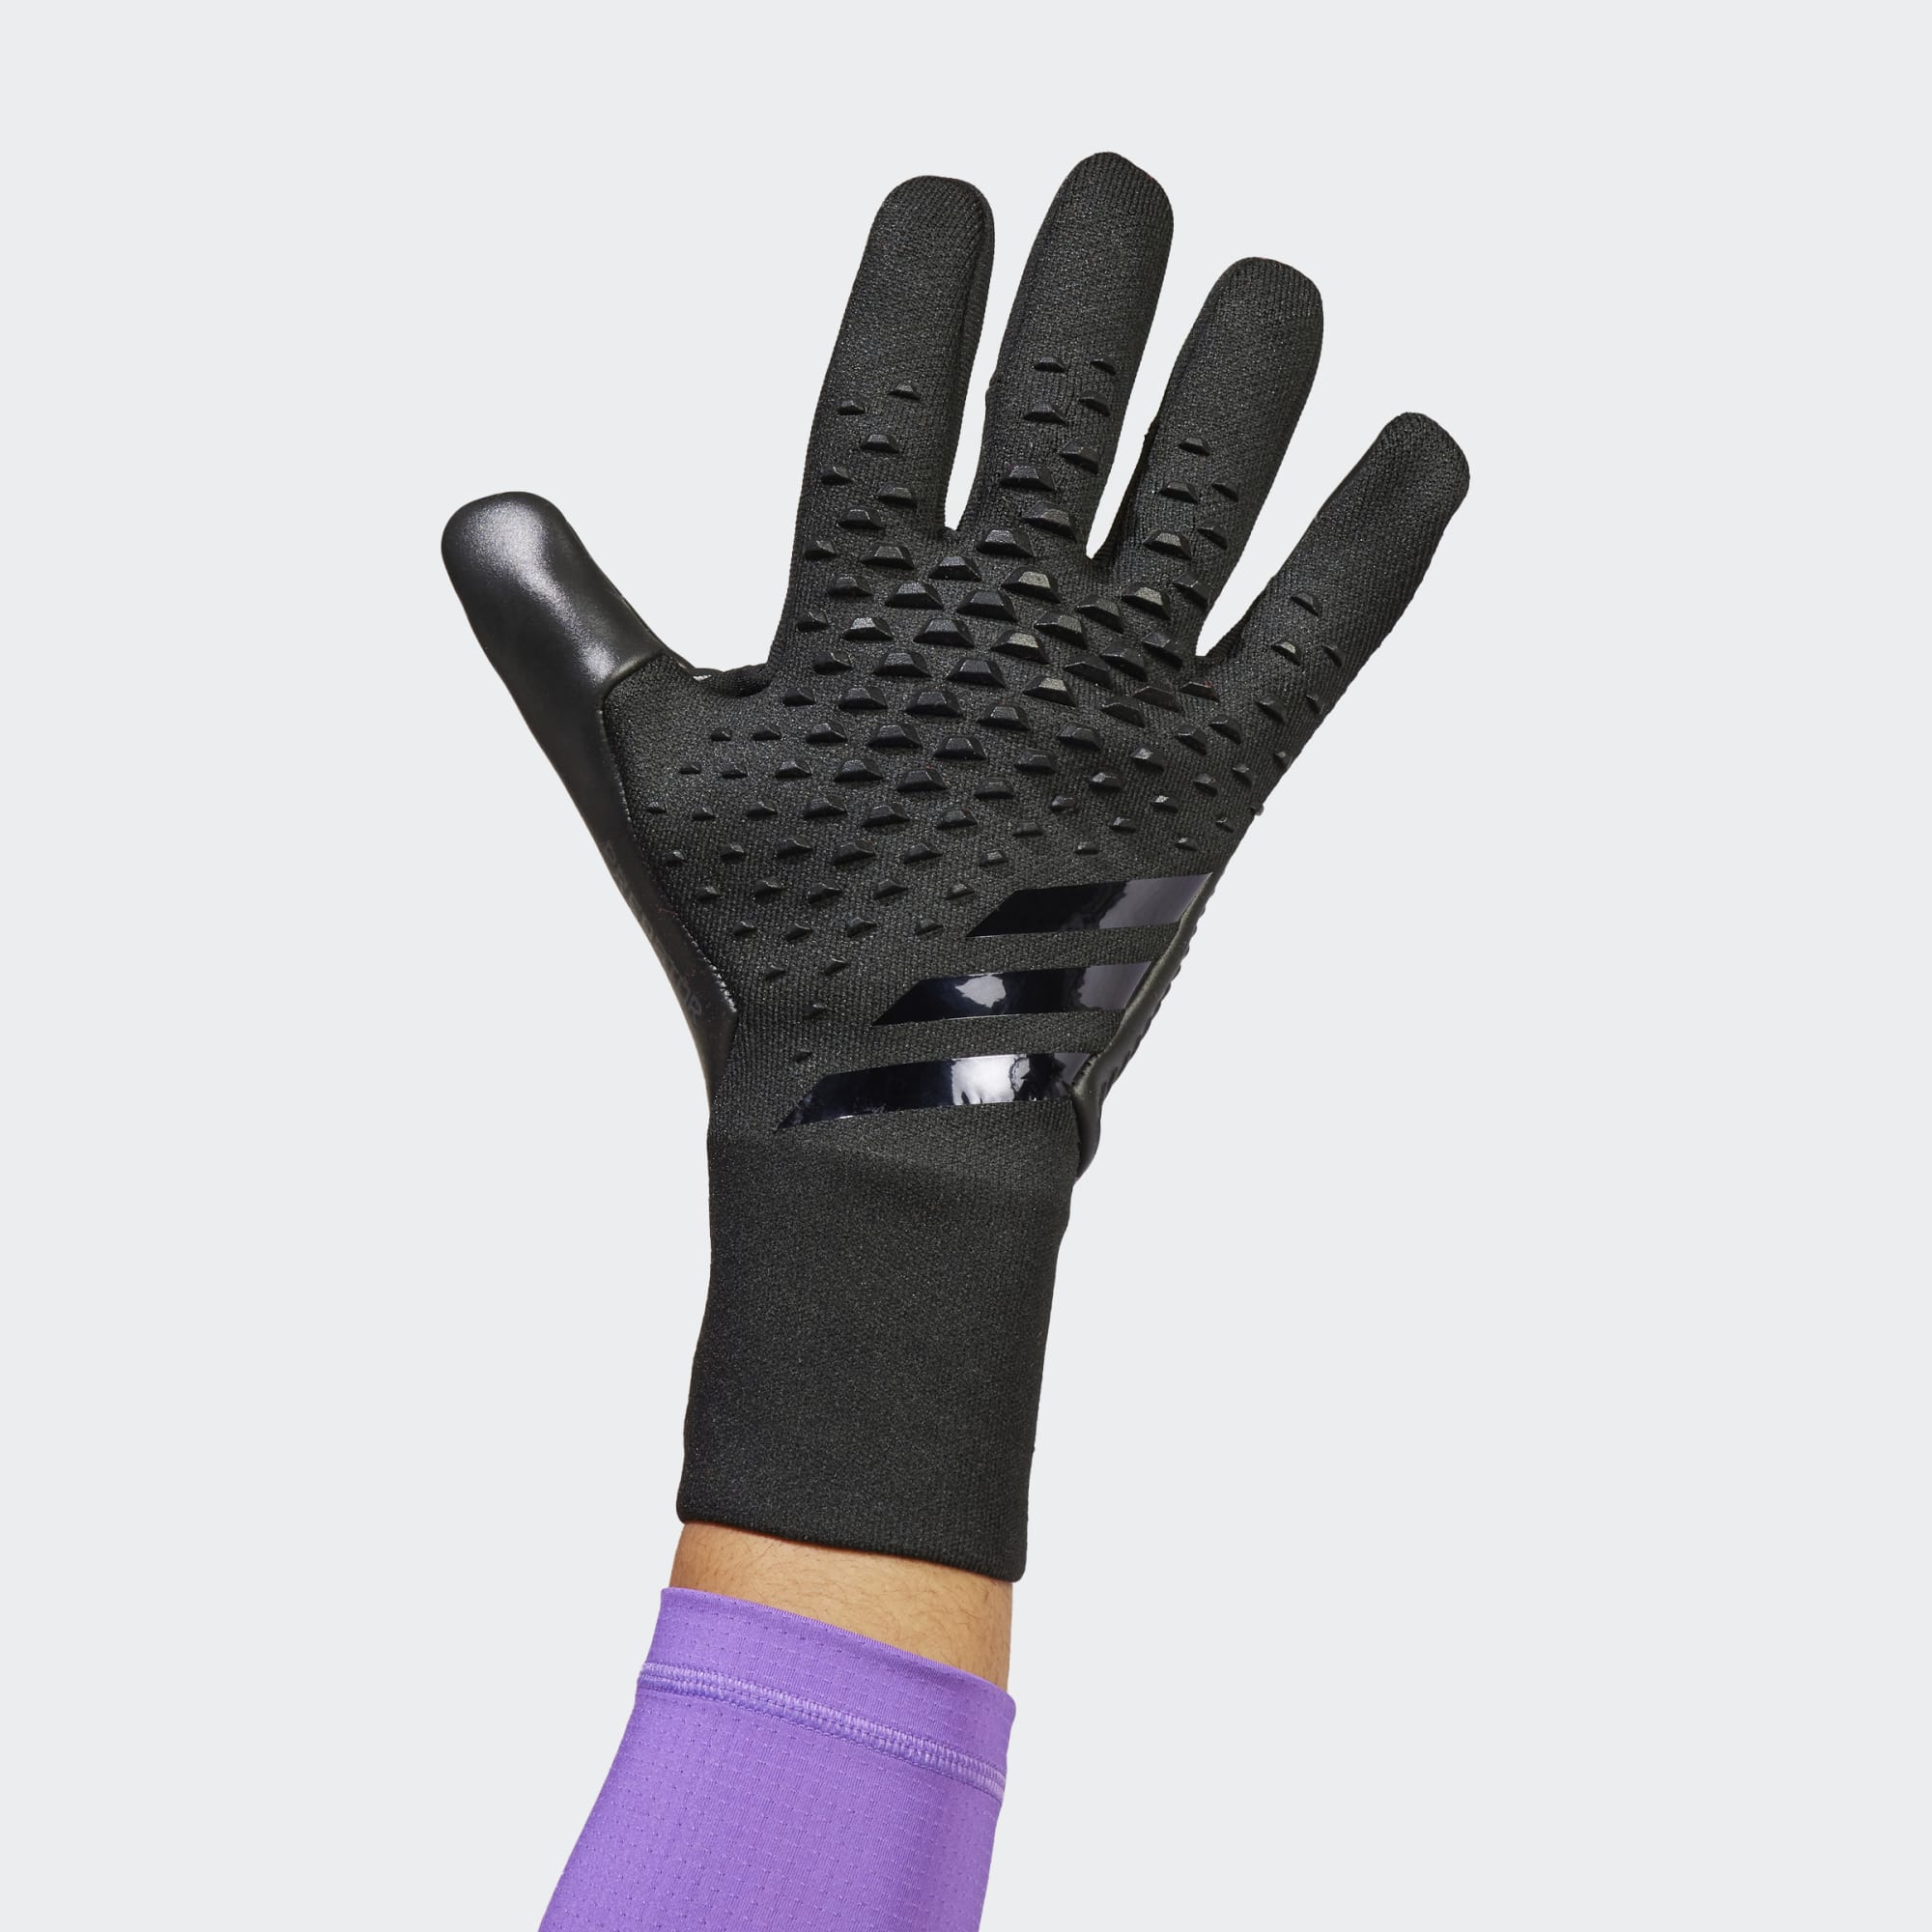 gewicht Mening Ingenieurs stefanssoccer.com:adidas Predator GL Pro GK Glove - Black